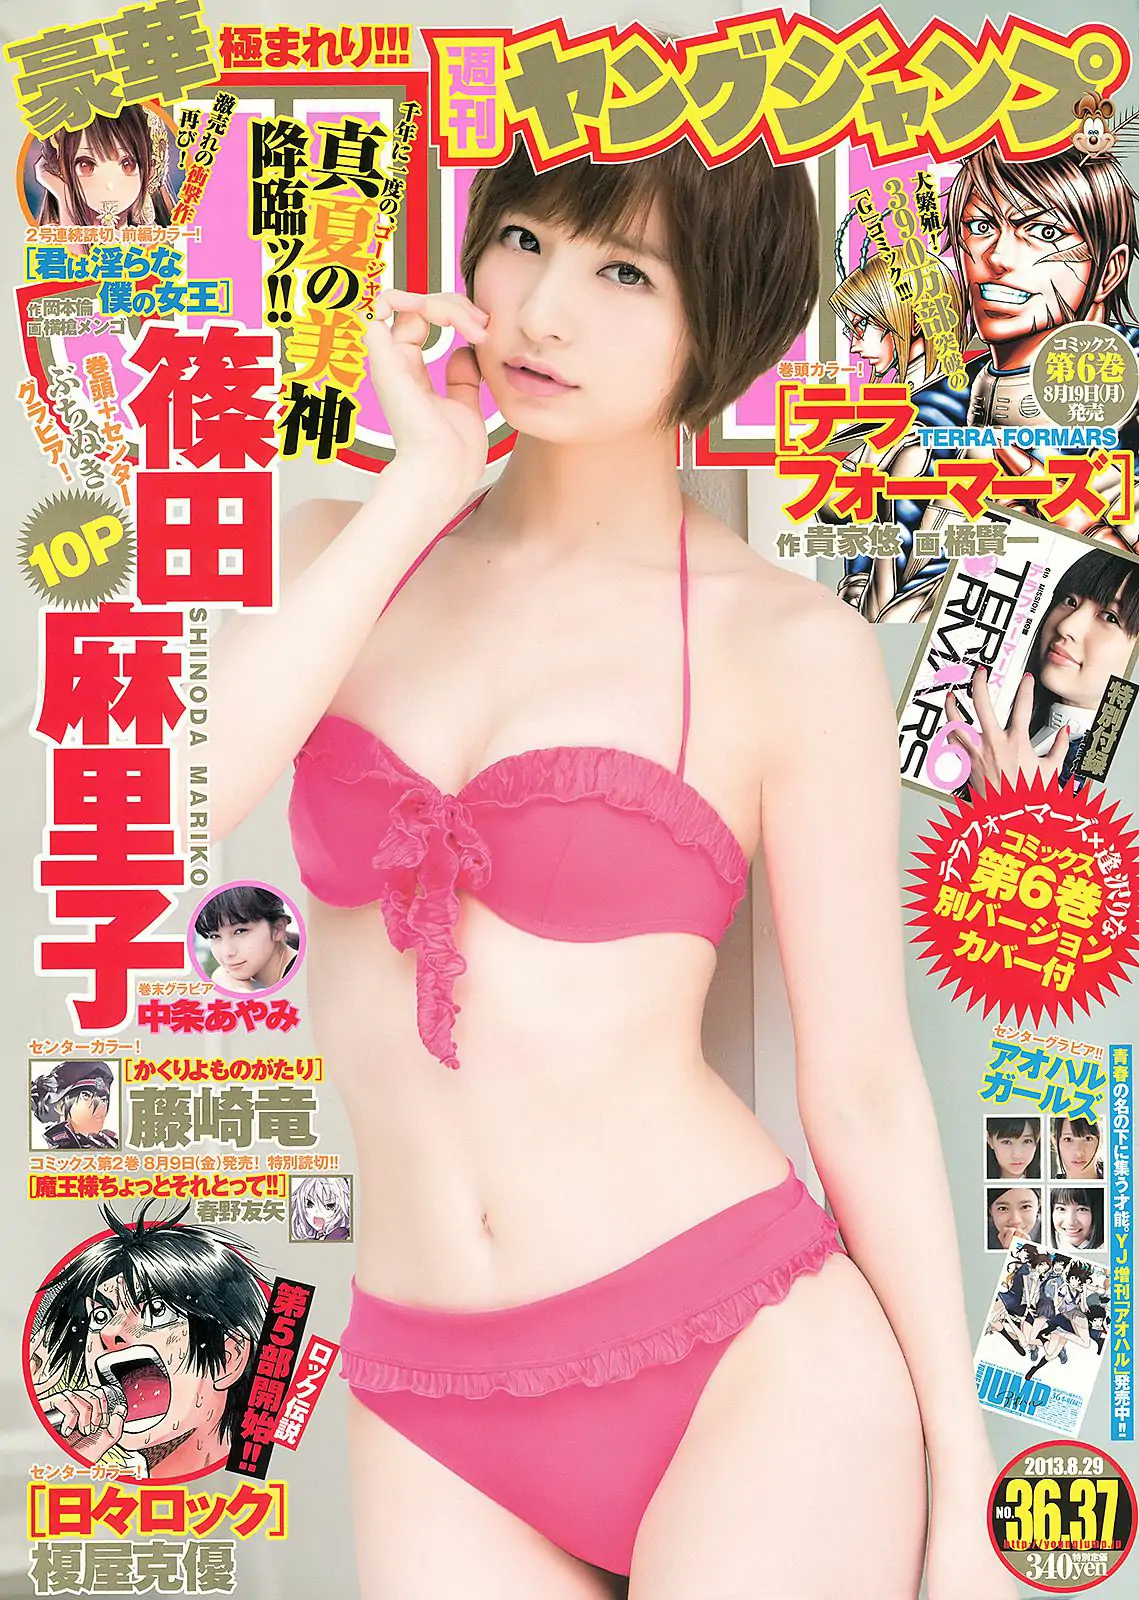 篠田麻里子 アオハルガールズ 中条あやみ [Weekly Young Jump] 2013年No.36-37 写真杂志